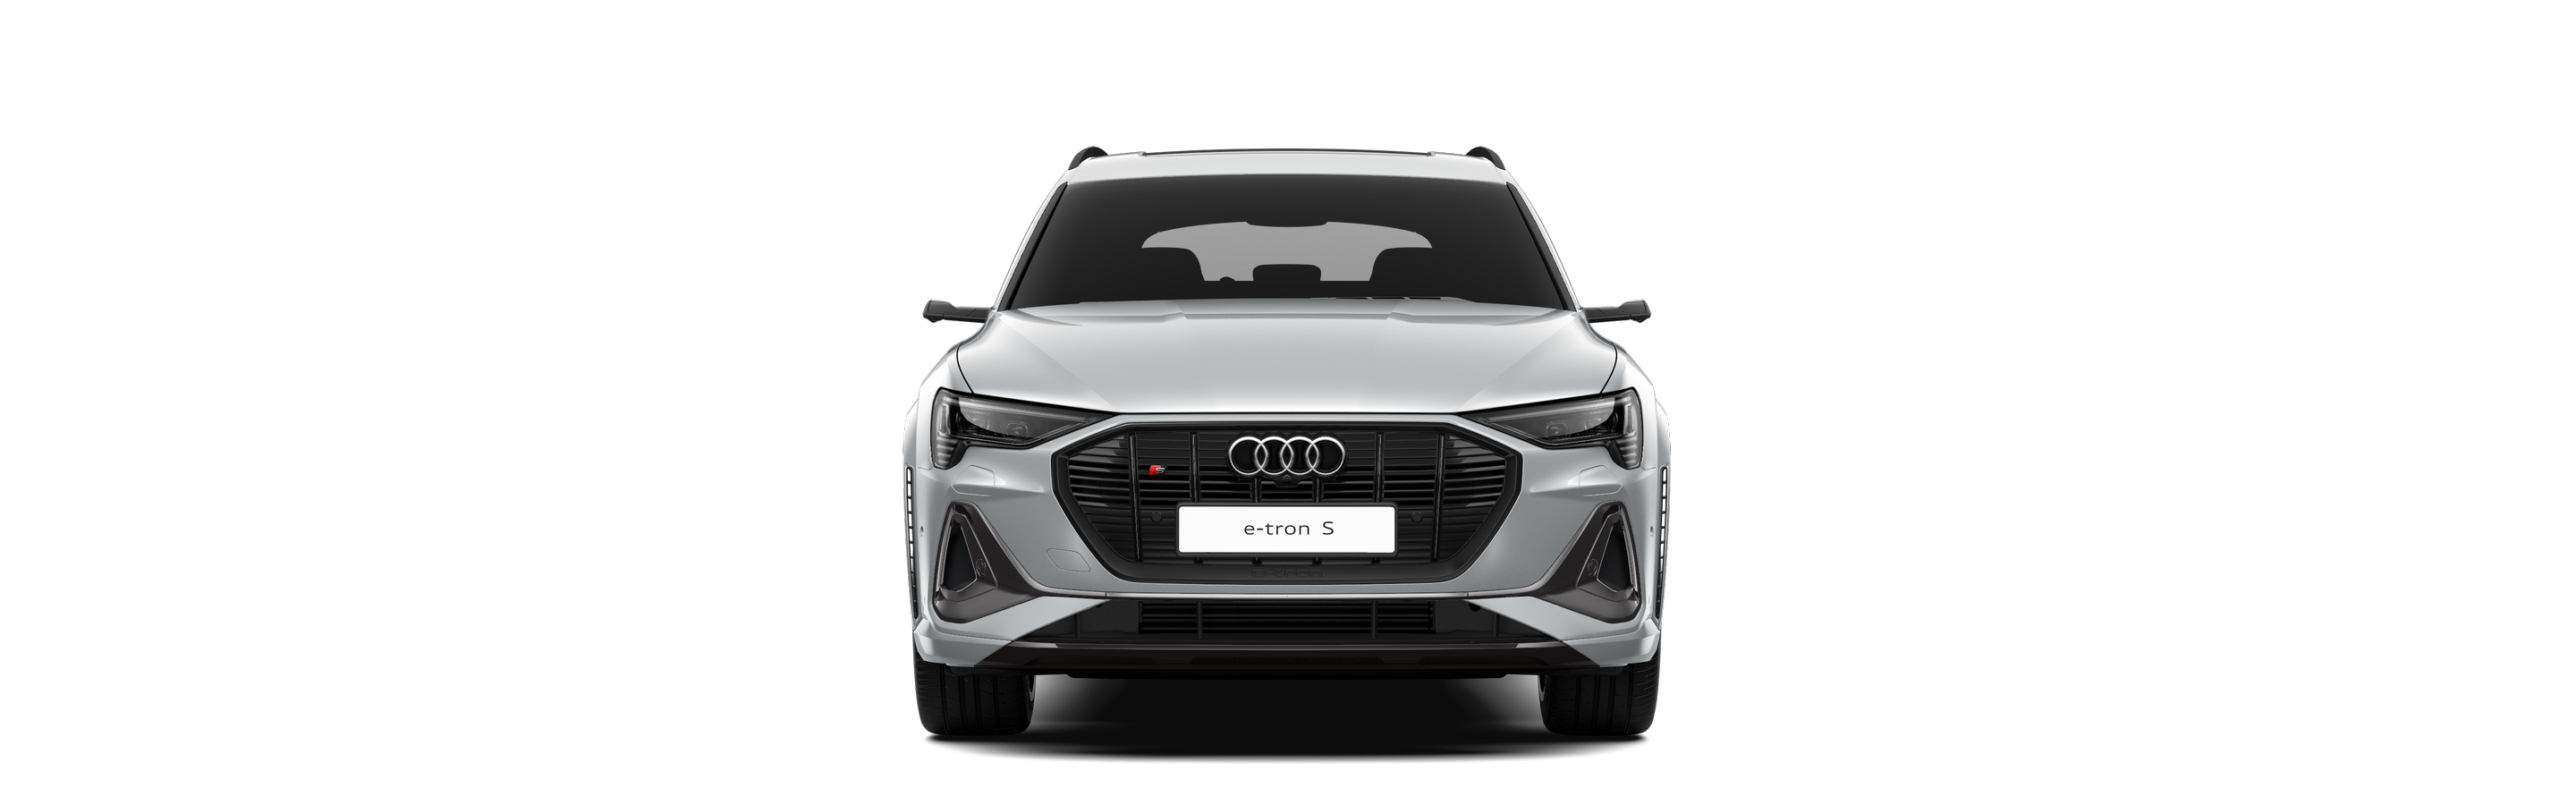 Audi e-tron S front